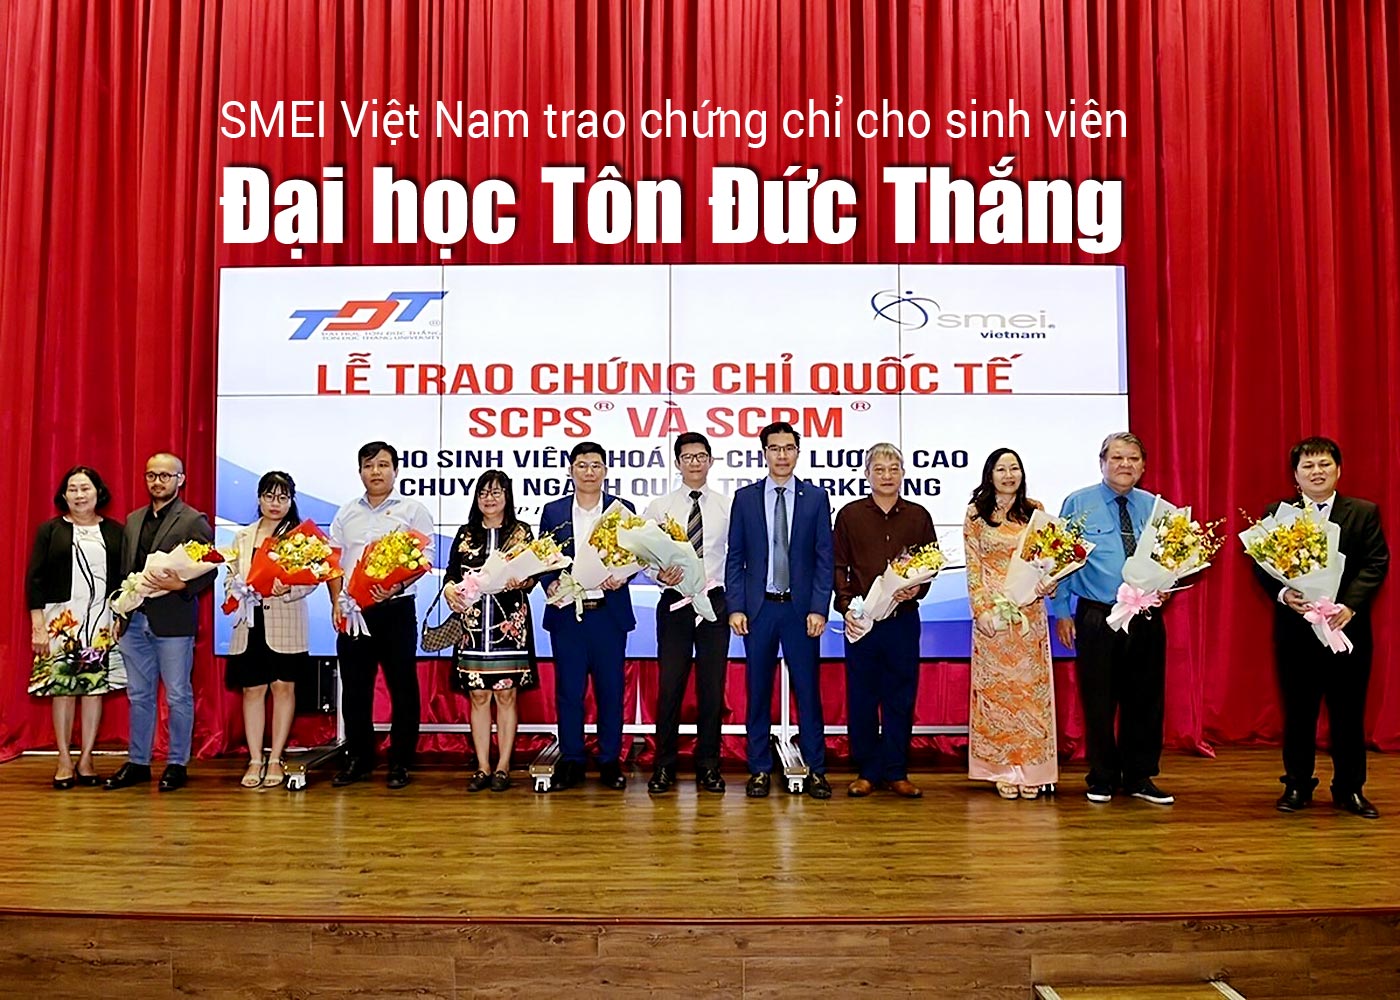 SMEI Việt Nam trao chứng chỉ cho sinh viên Đại học Tôn Đức Thắng - Ảnh 1